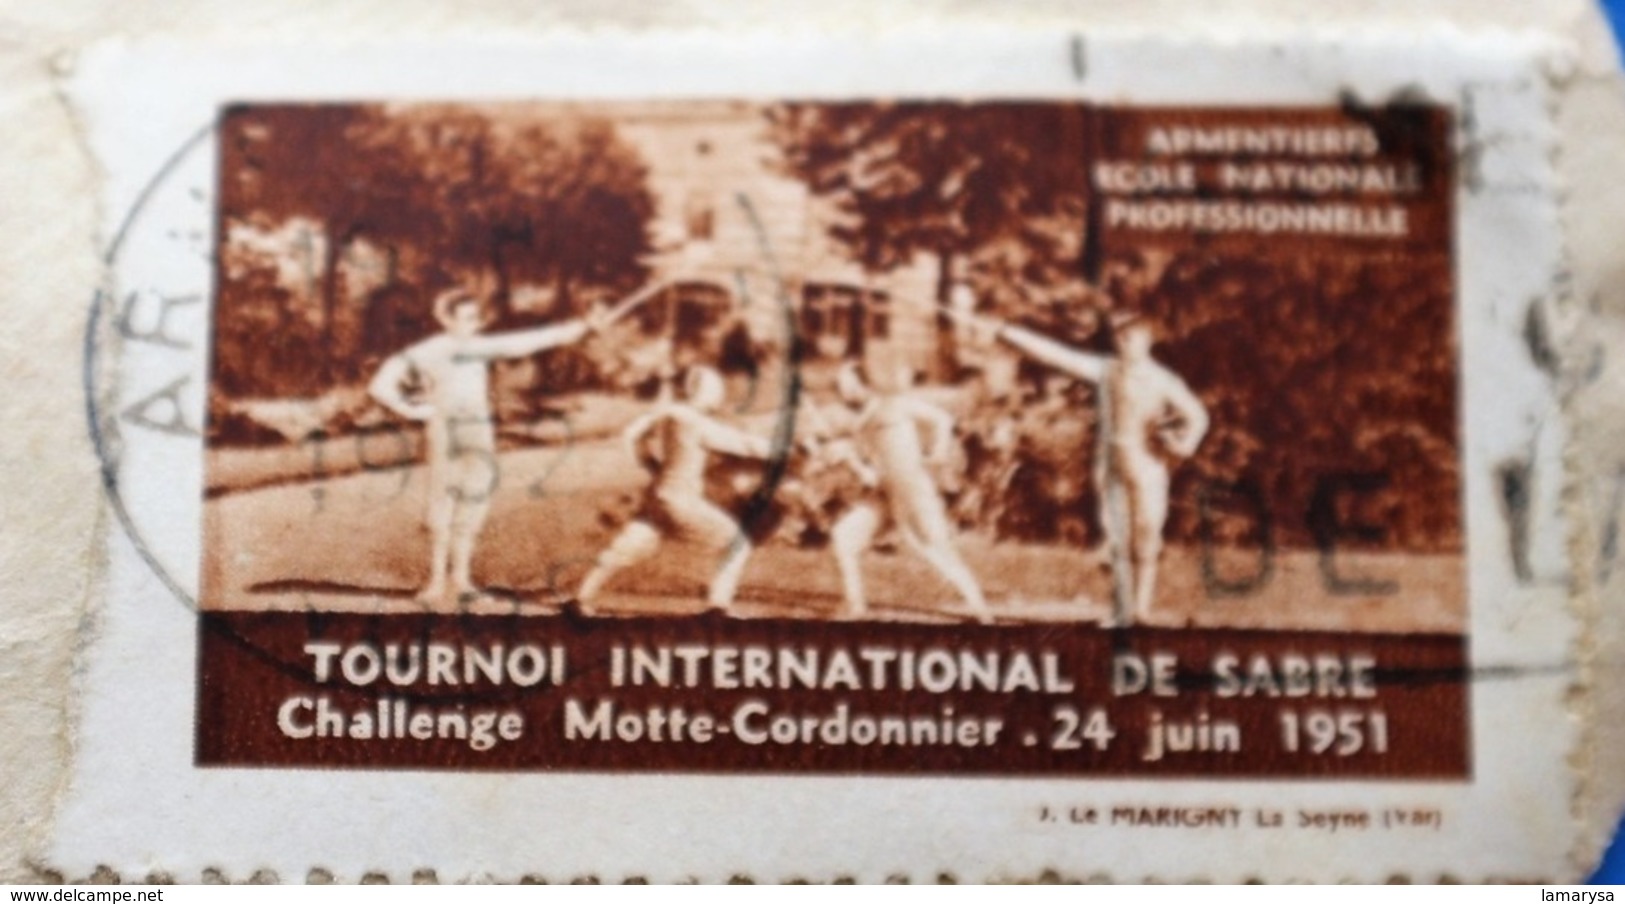 ARMENTIÈRES 1951 TOURNOI INTERNATIONAL DE SABRE CHALLE MAÎTRE CORDONNIER Vignette-Erinnophilie,Timbre,stamp,Bollo-Viñeta - Sports